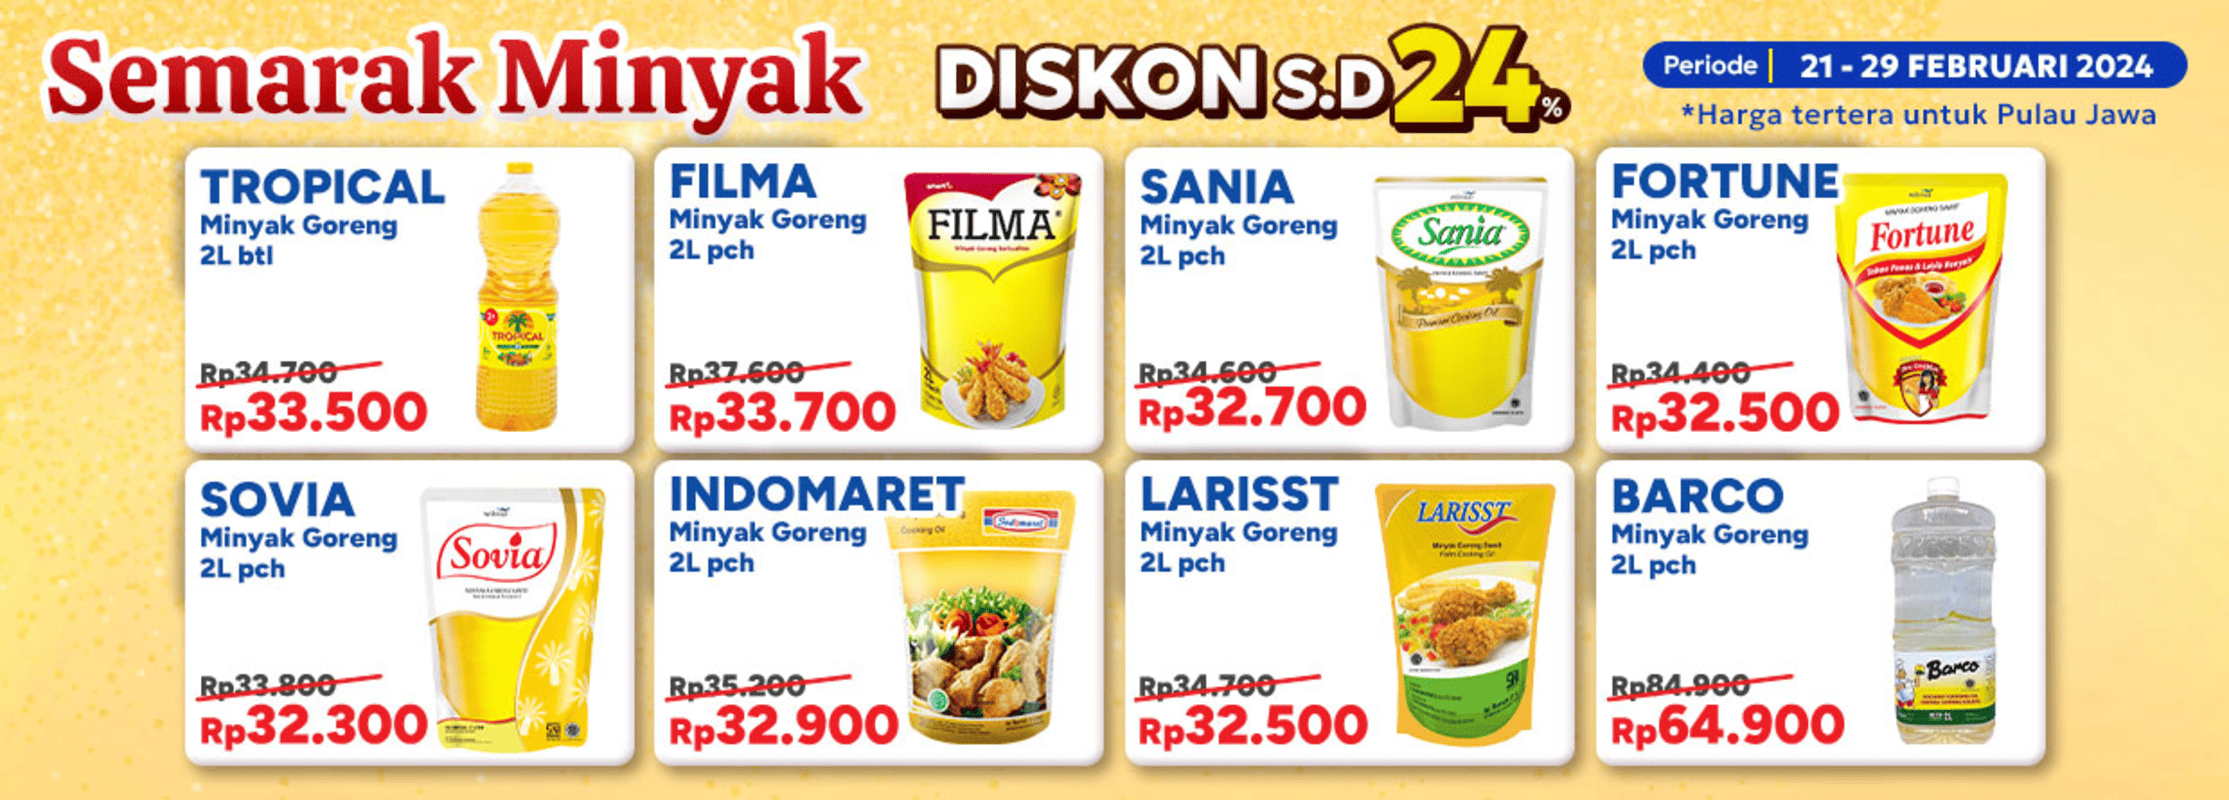 Promo Semarak Minyak Indomaret yang memberikan diskon harga minyak goreng sampai dengan 24 persen, berakhir pada 29 Februari 2024./klikindomaret.com